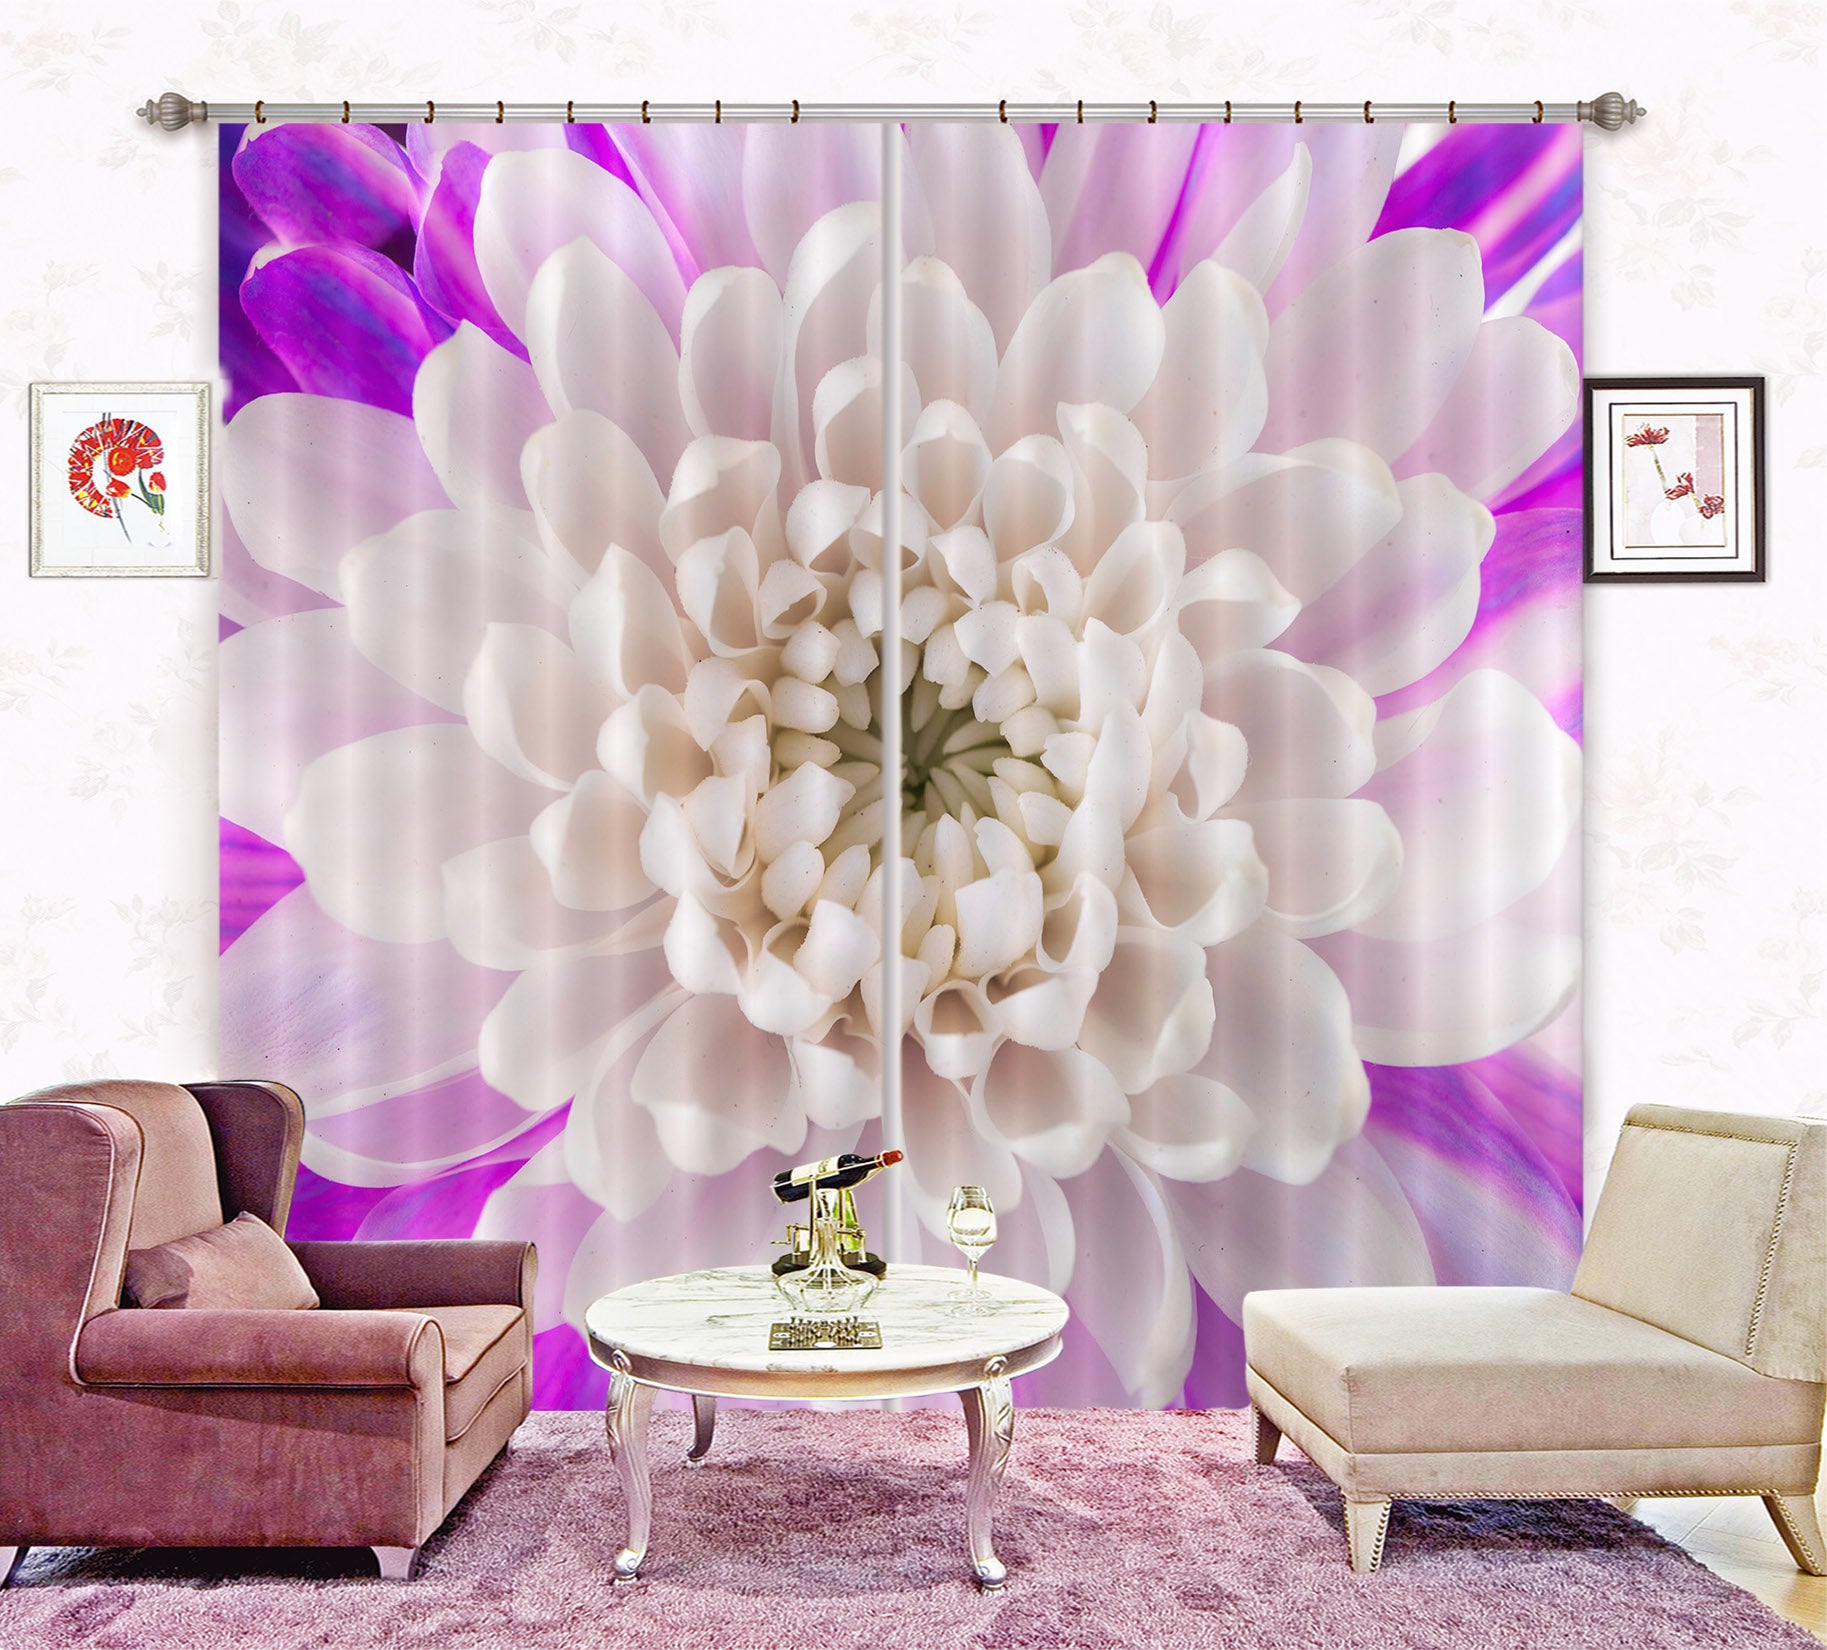 3D White Petals 223 Assaf Frank Curtain Curtains Drapes